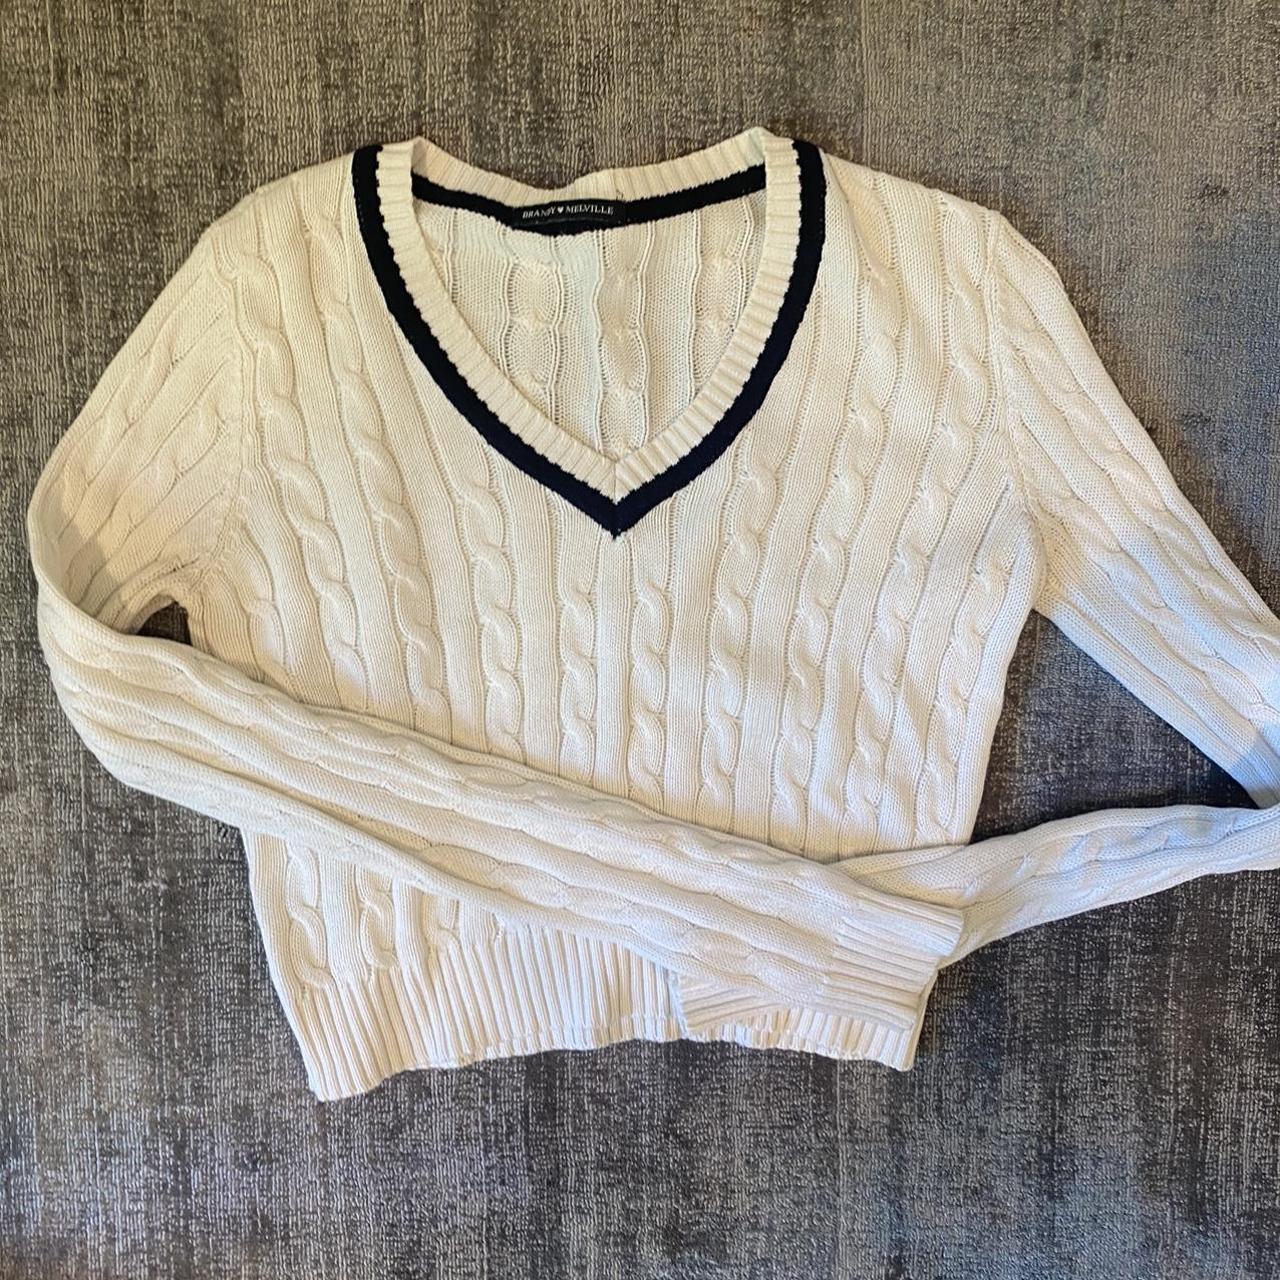 Brandy Melville v neck cable knit sweater - Depop